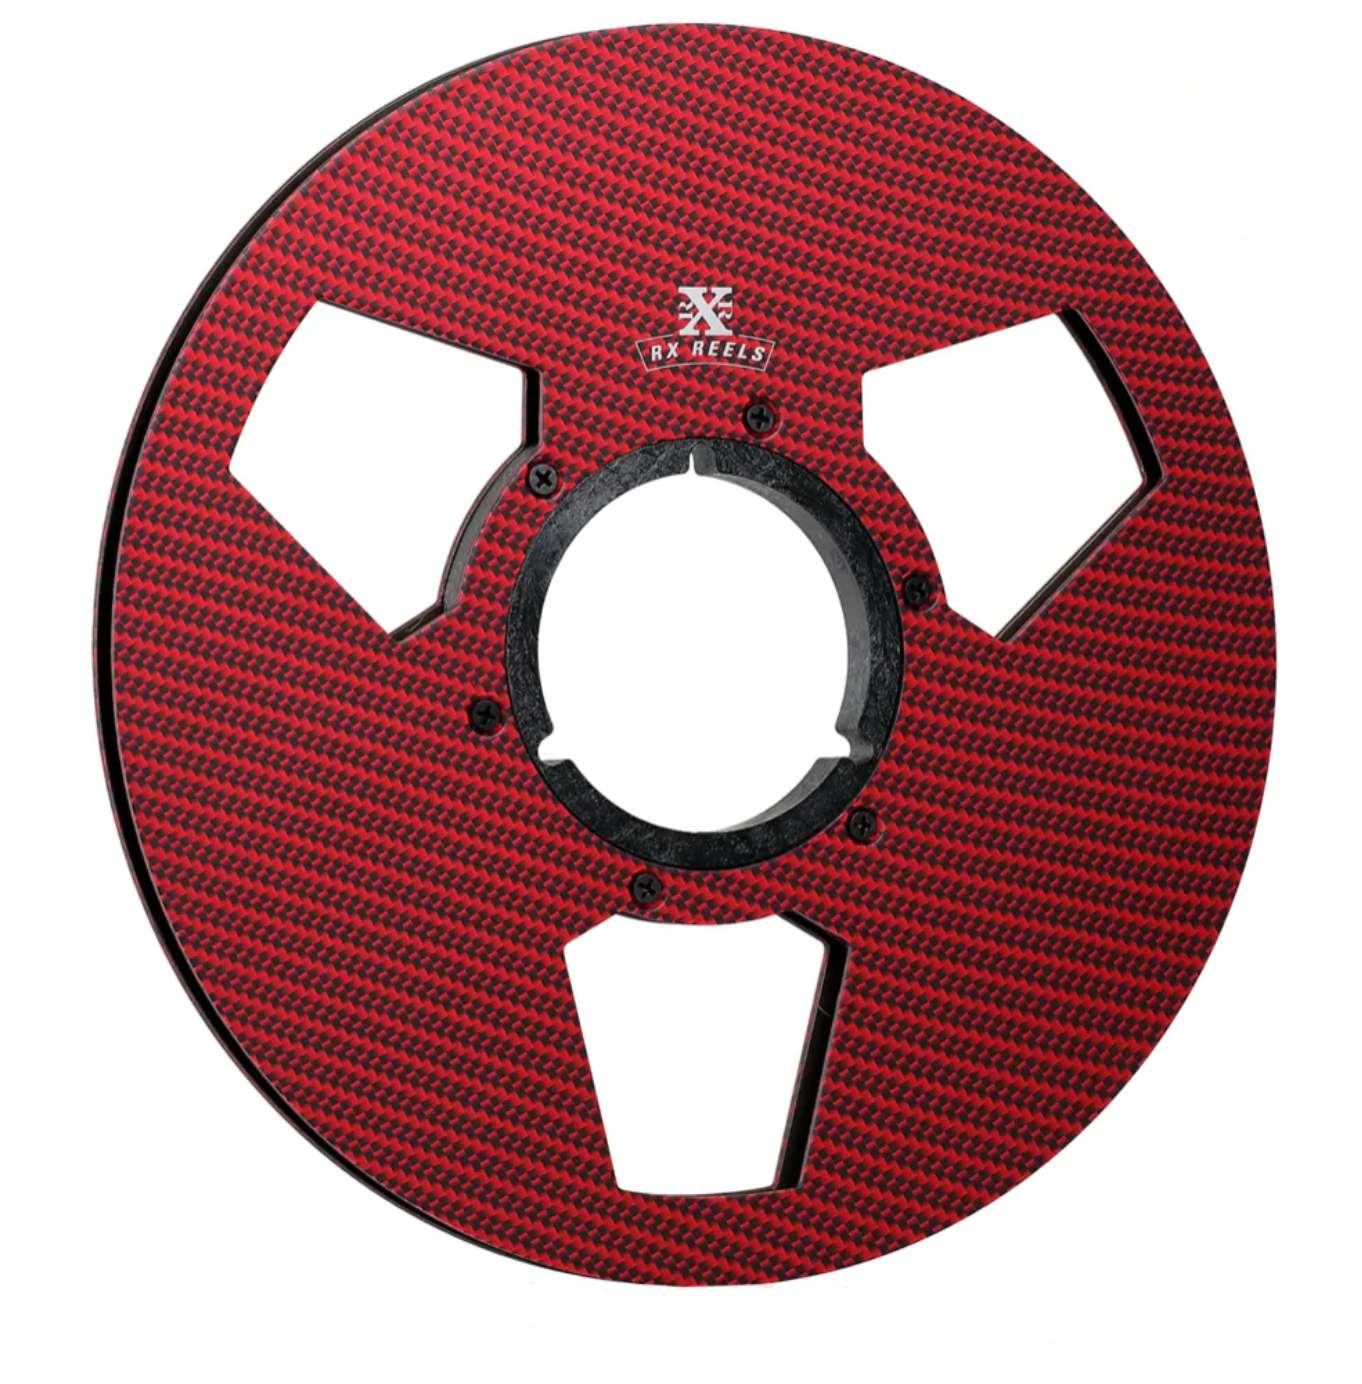 10.5" Carbon Fiber Reels - Arena Red, RX Reels